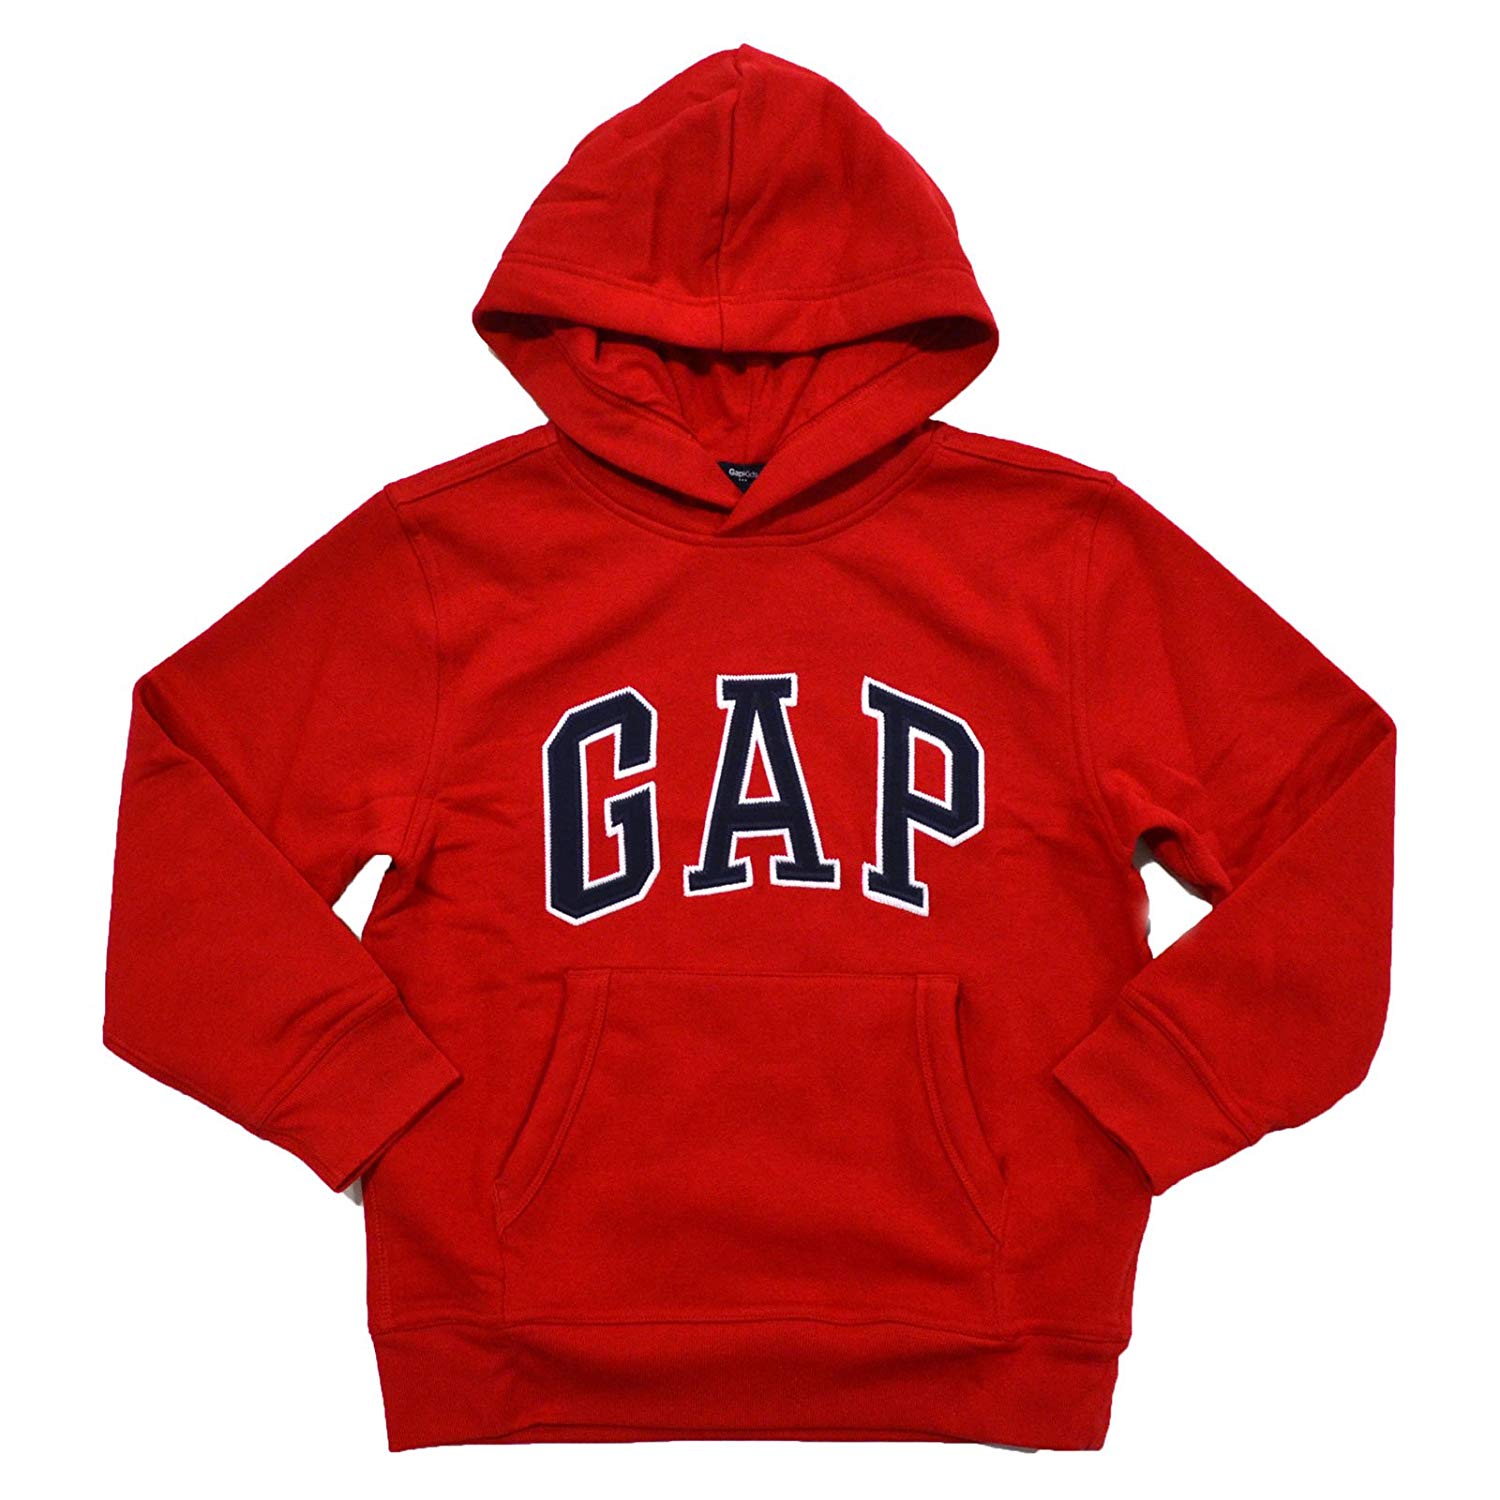 GAP hoodie